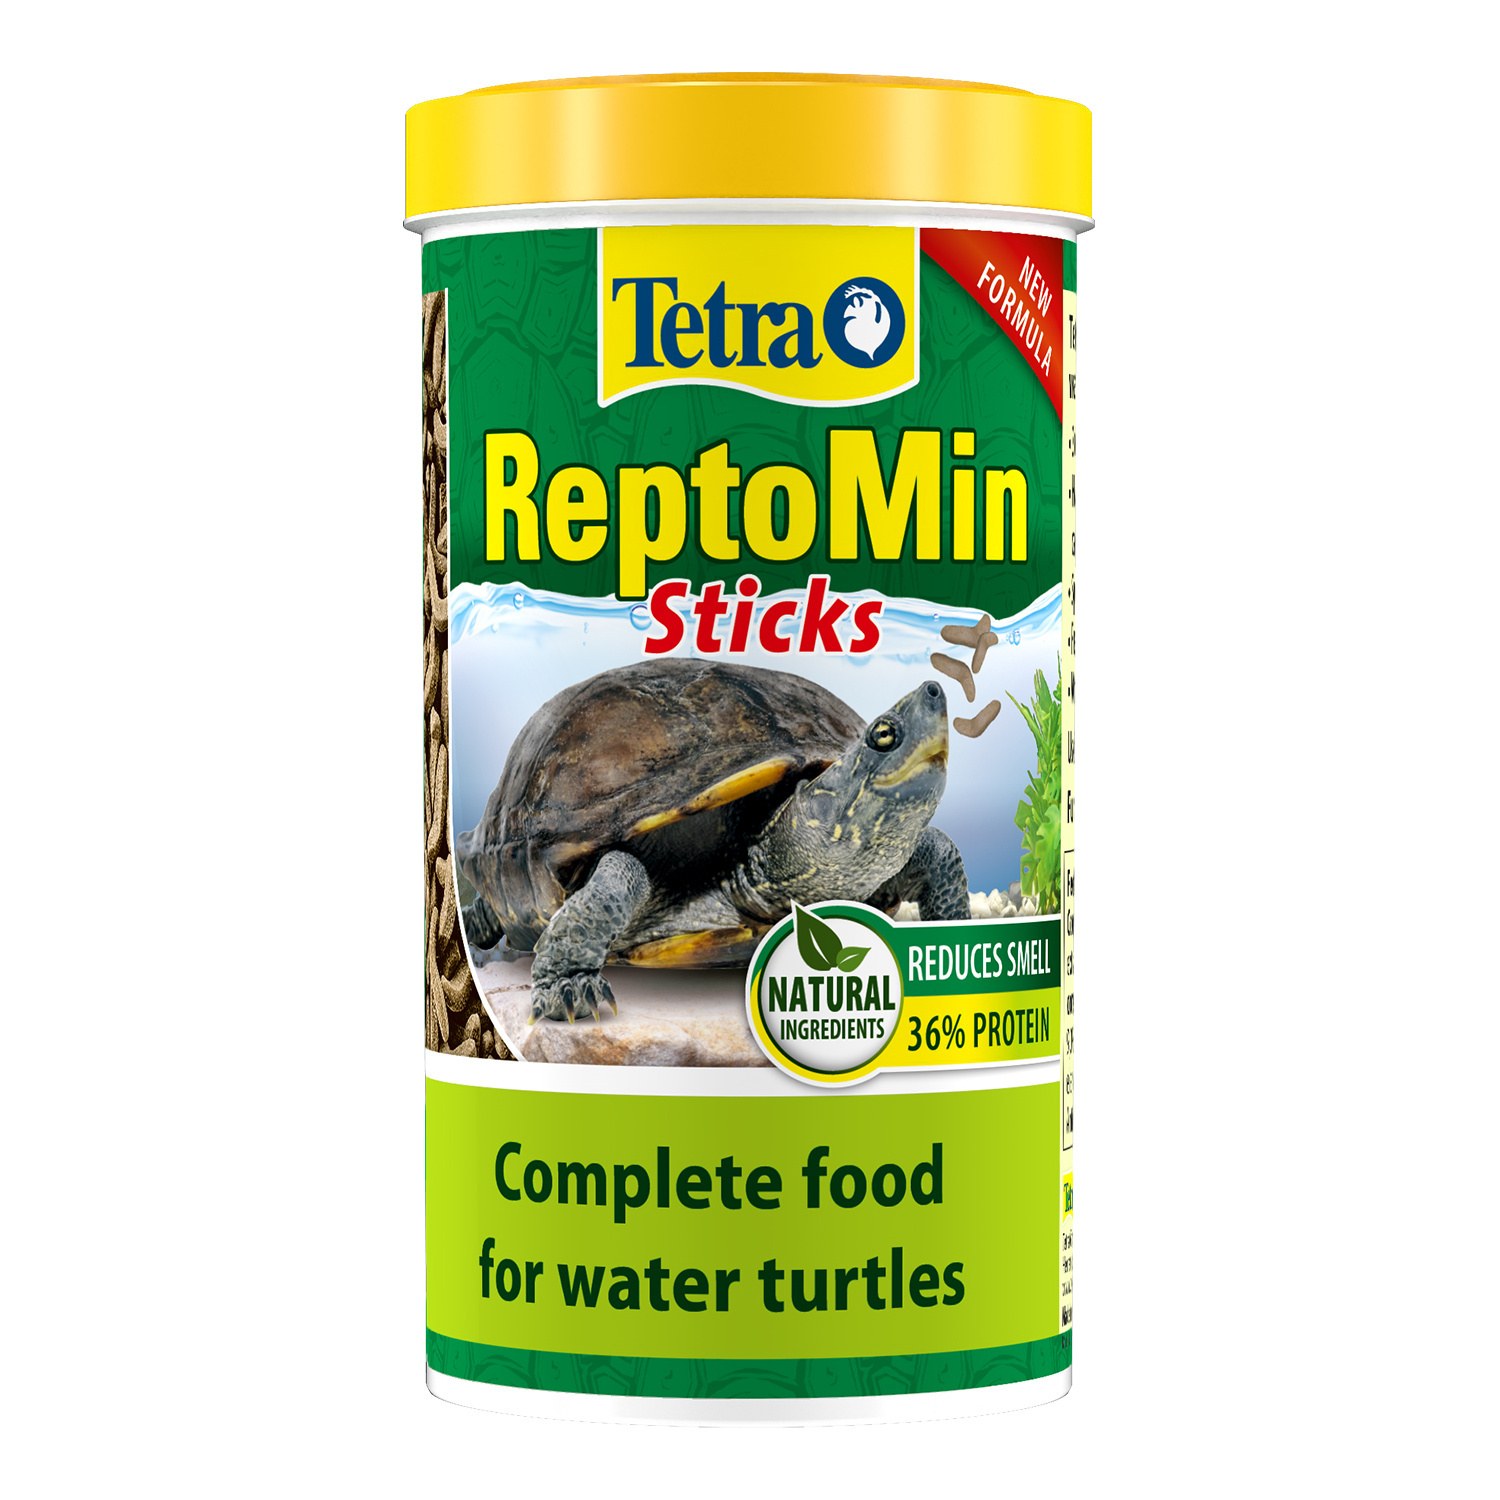 Tetra (корма) Tetra (корма) корм для водных черепах ReptoМin (130 г) tetra корма tetra корма корм для водных черепах гаммарус 10 г